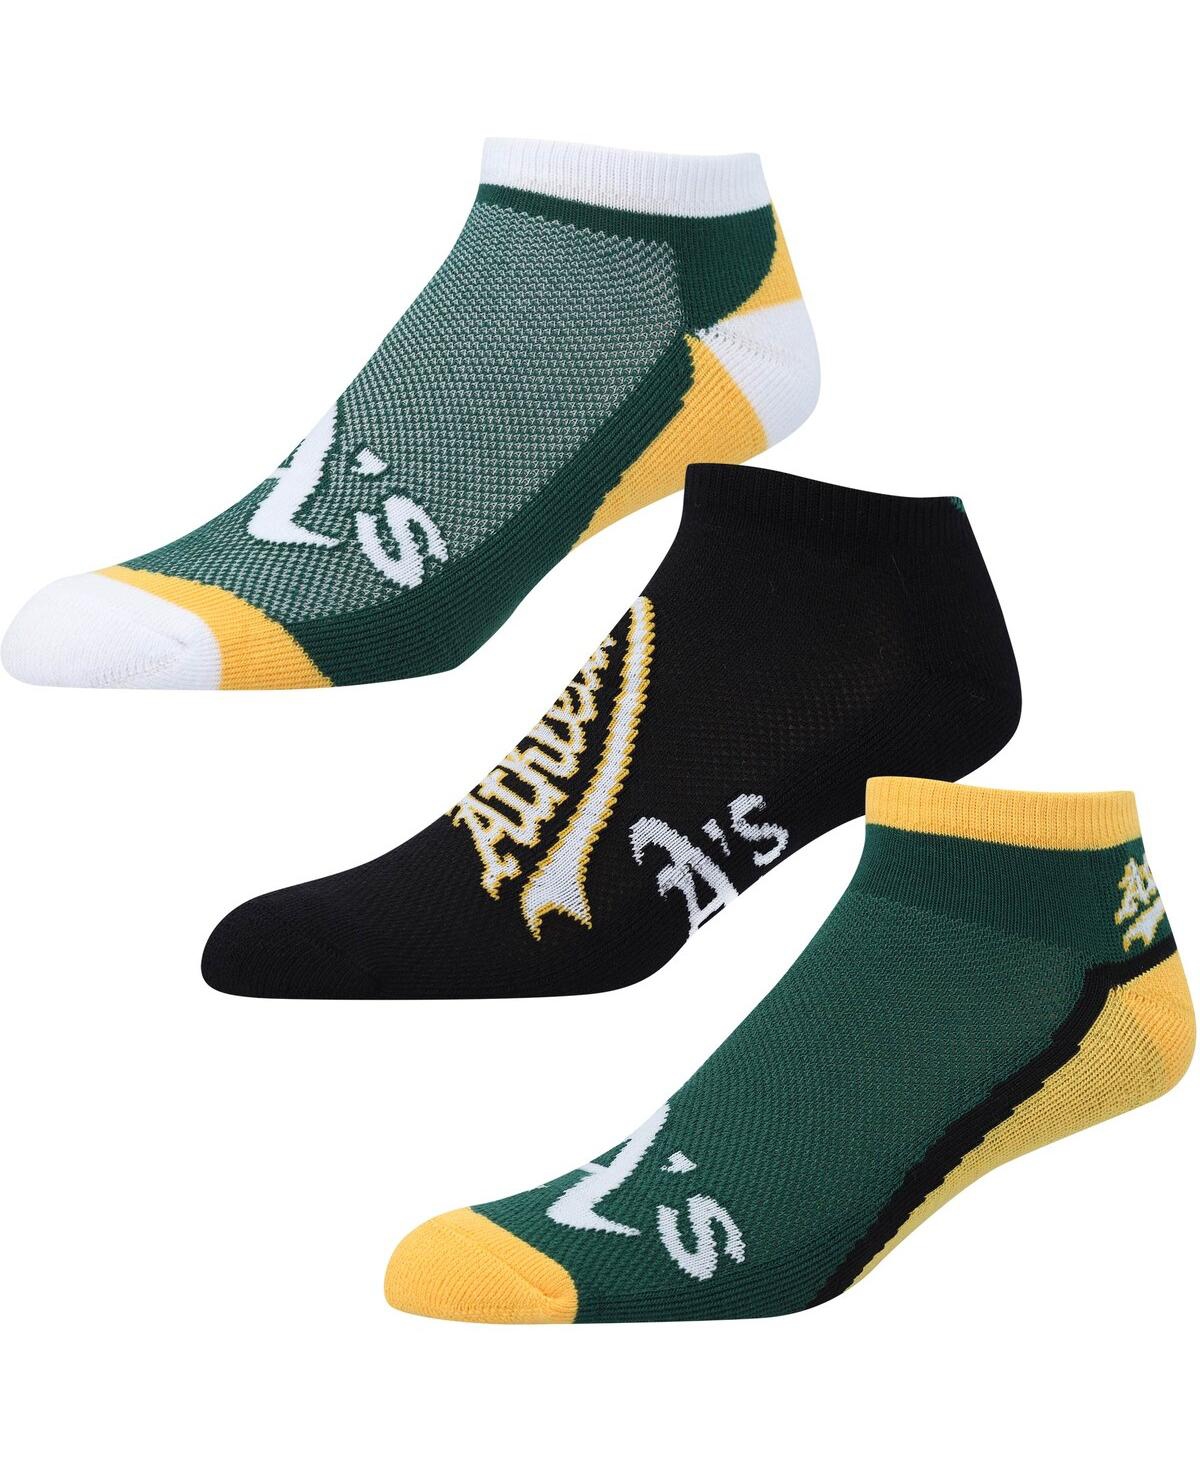 Men's and Women's For Bare Feet Oakland Athletics Flash Ankle Socks 3-Pack Set - Green, Black